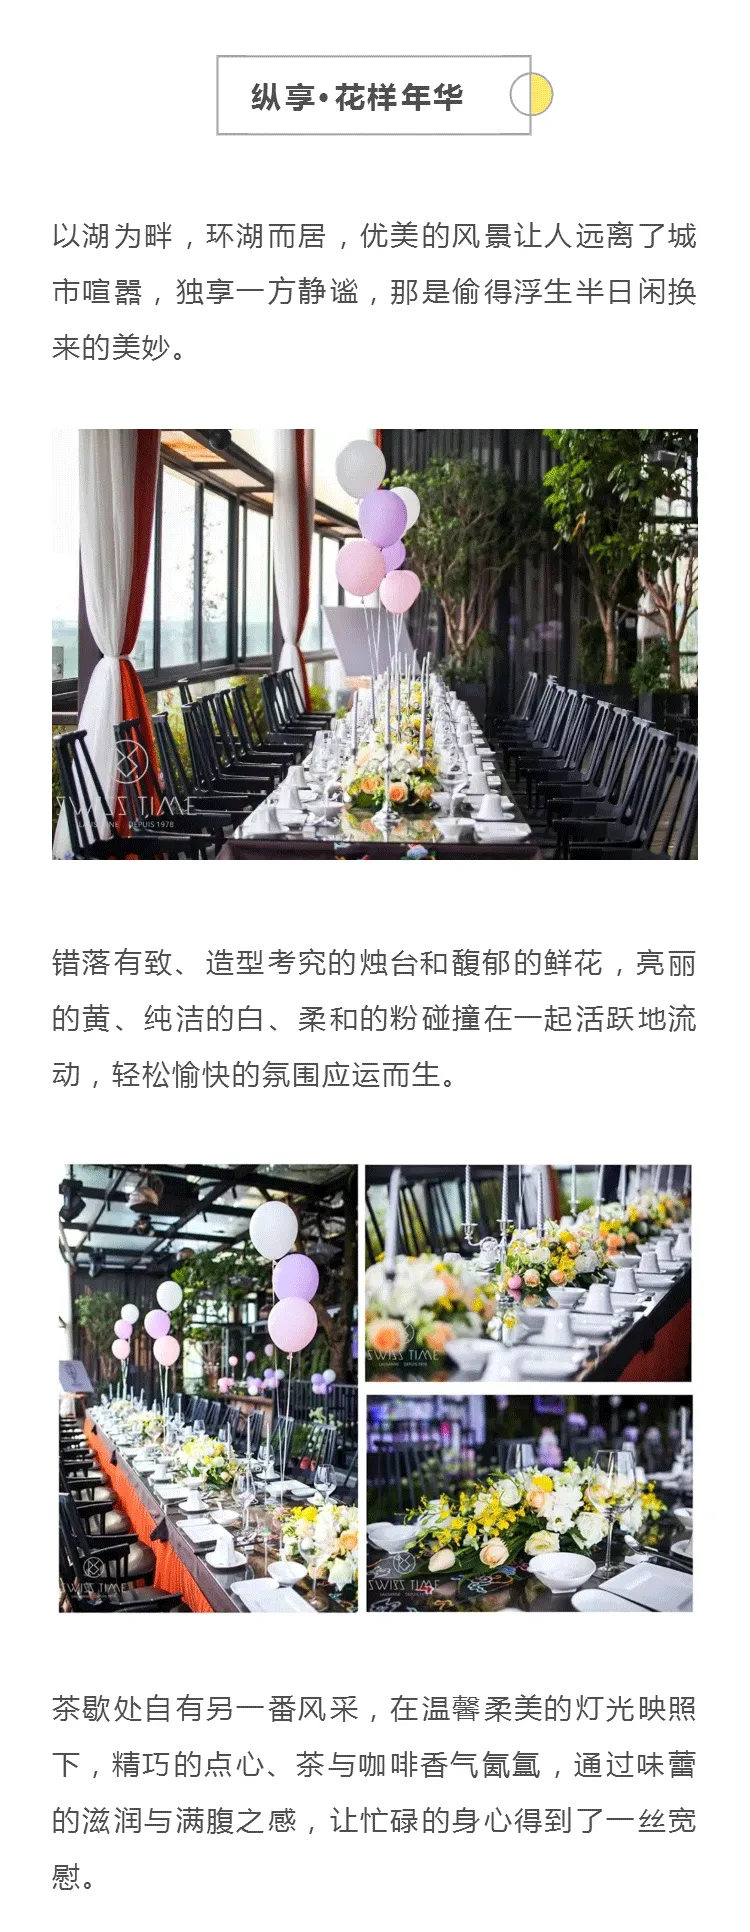 艺马 x 长江商学院圆桌骑士队 | 中西式精品宴会